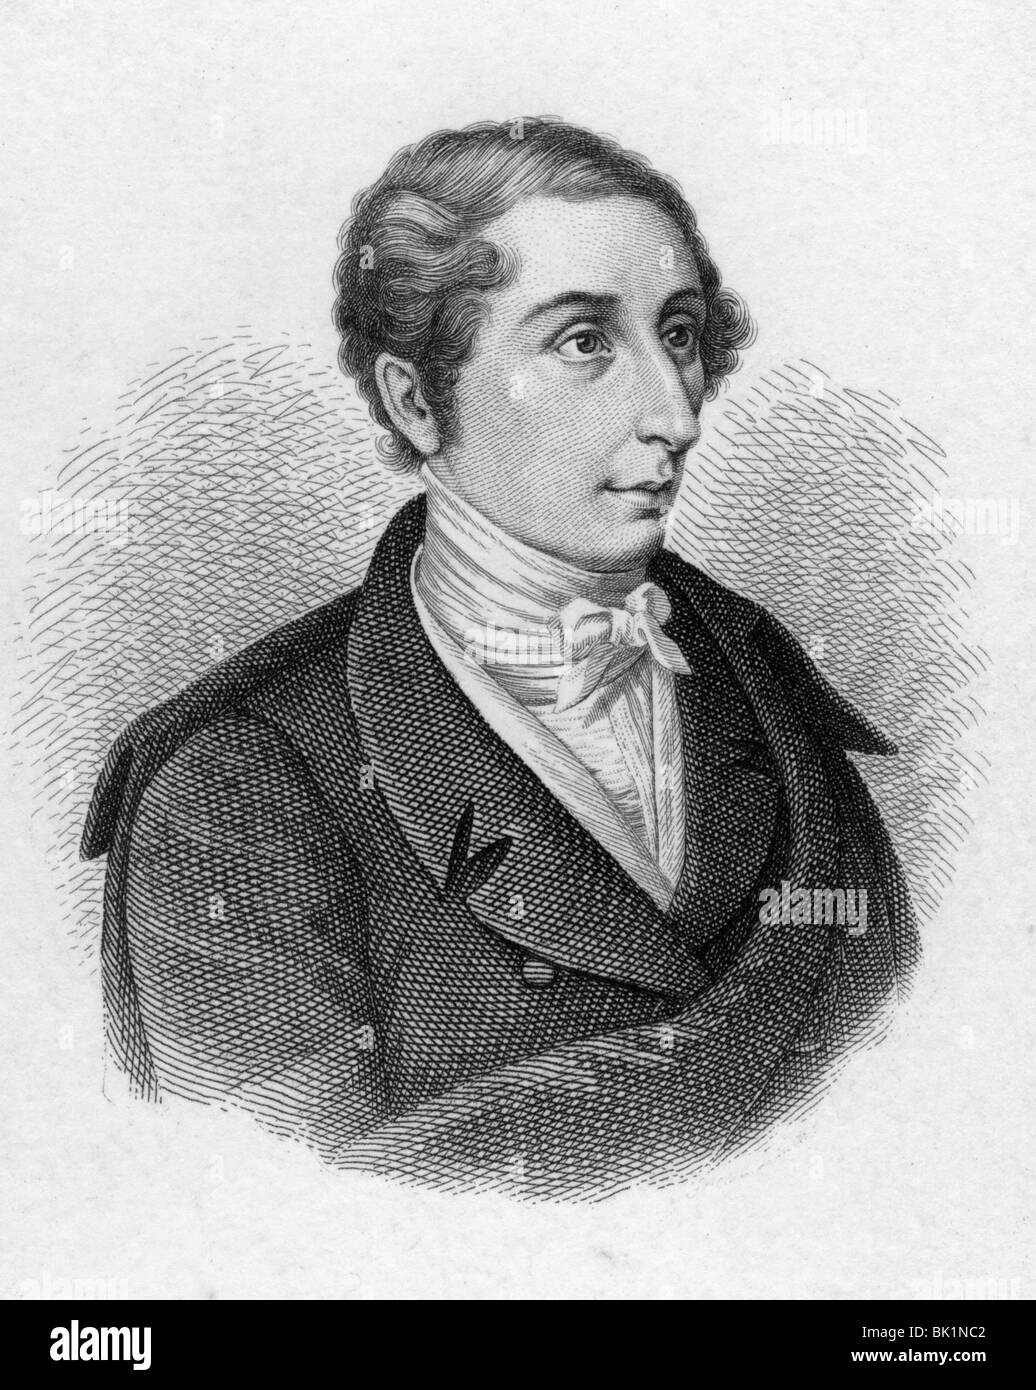 CARL MARIA FRIEDRICH von WEBER - German composer (1786-1826) Stock Photo